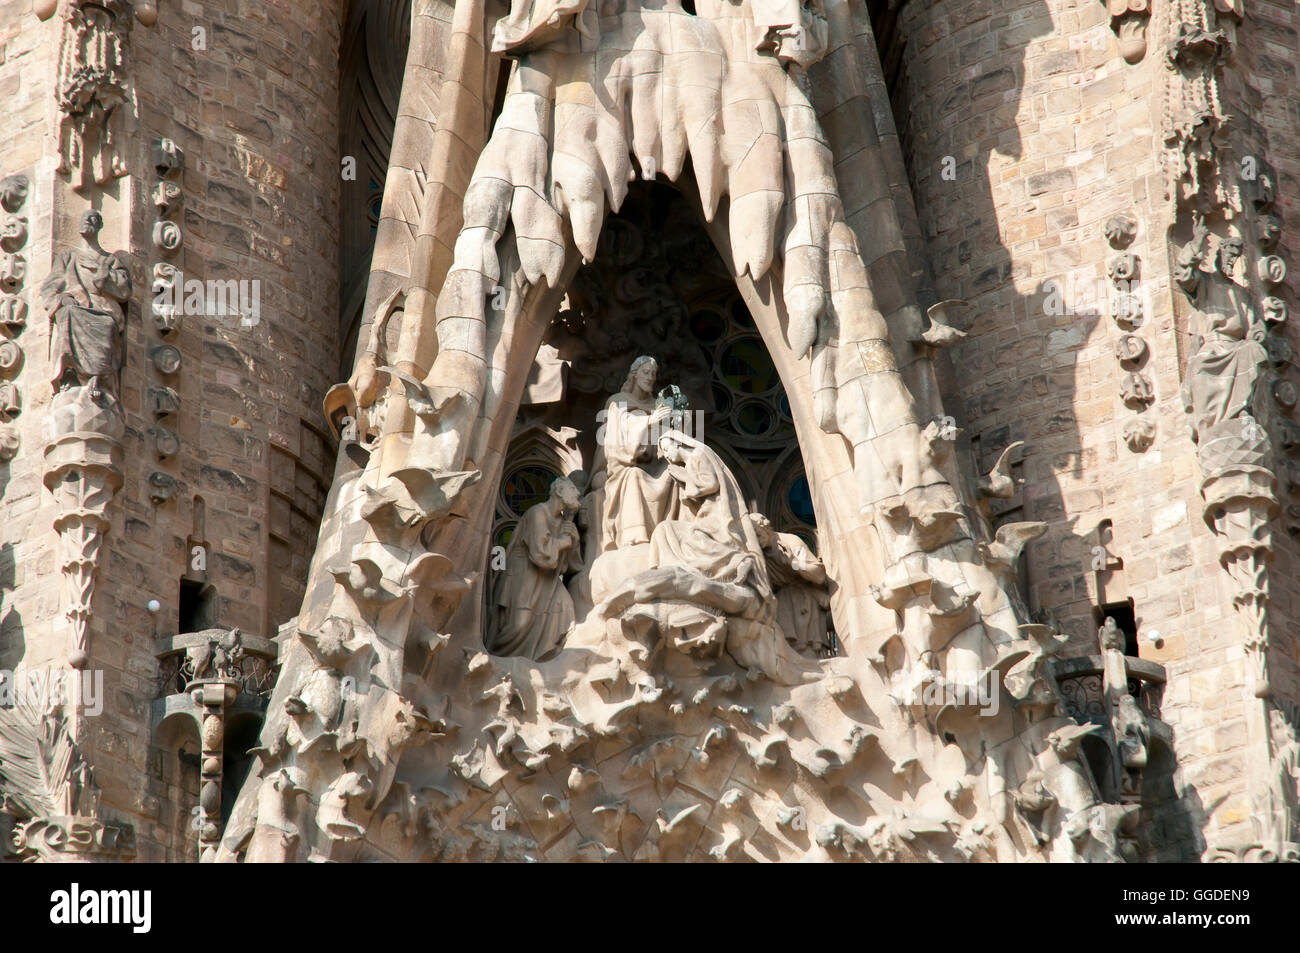 Façade de la basilique Sagrada Familia libre - Barcelone - Espagne Banque D'Images